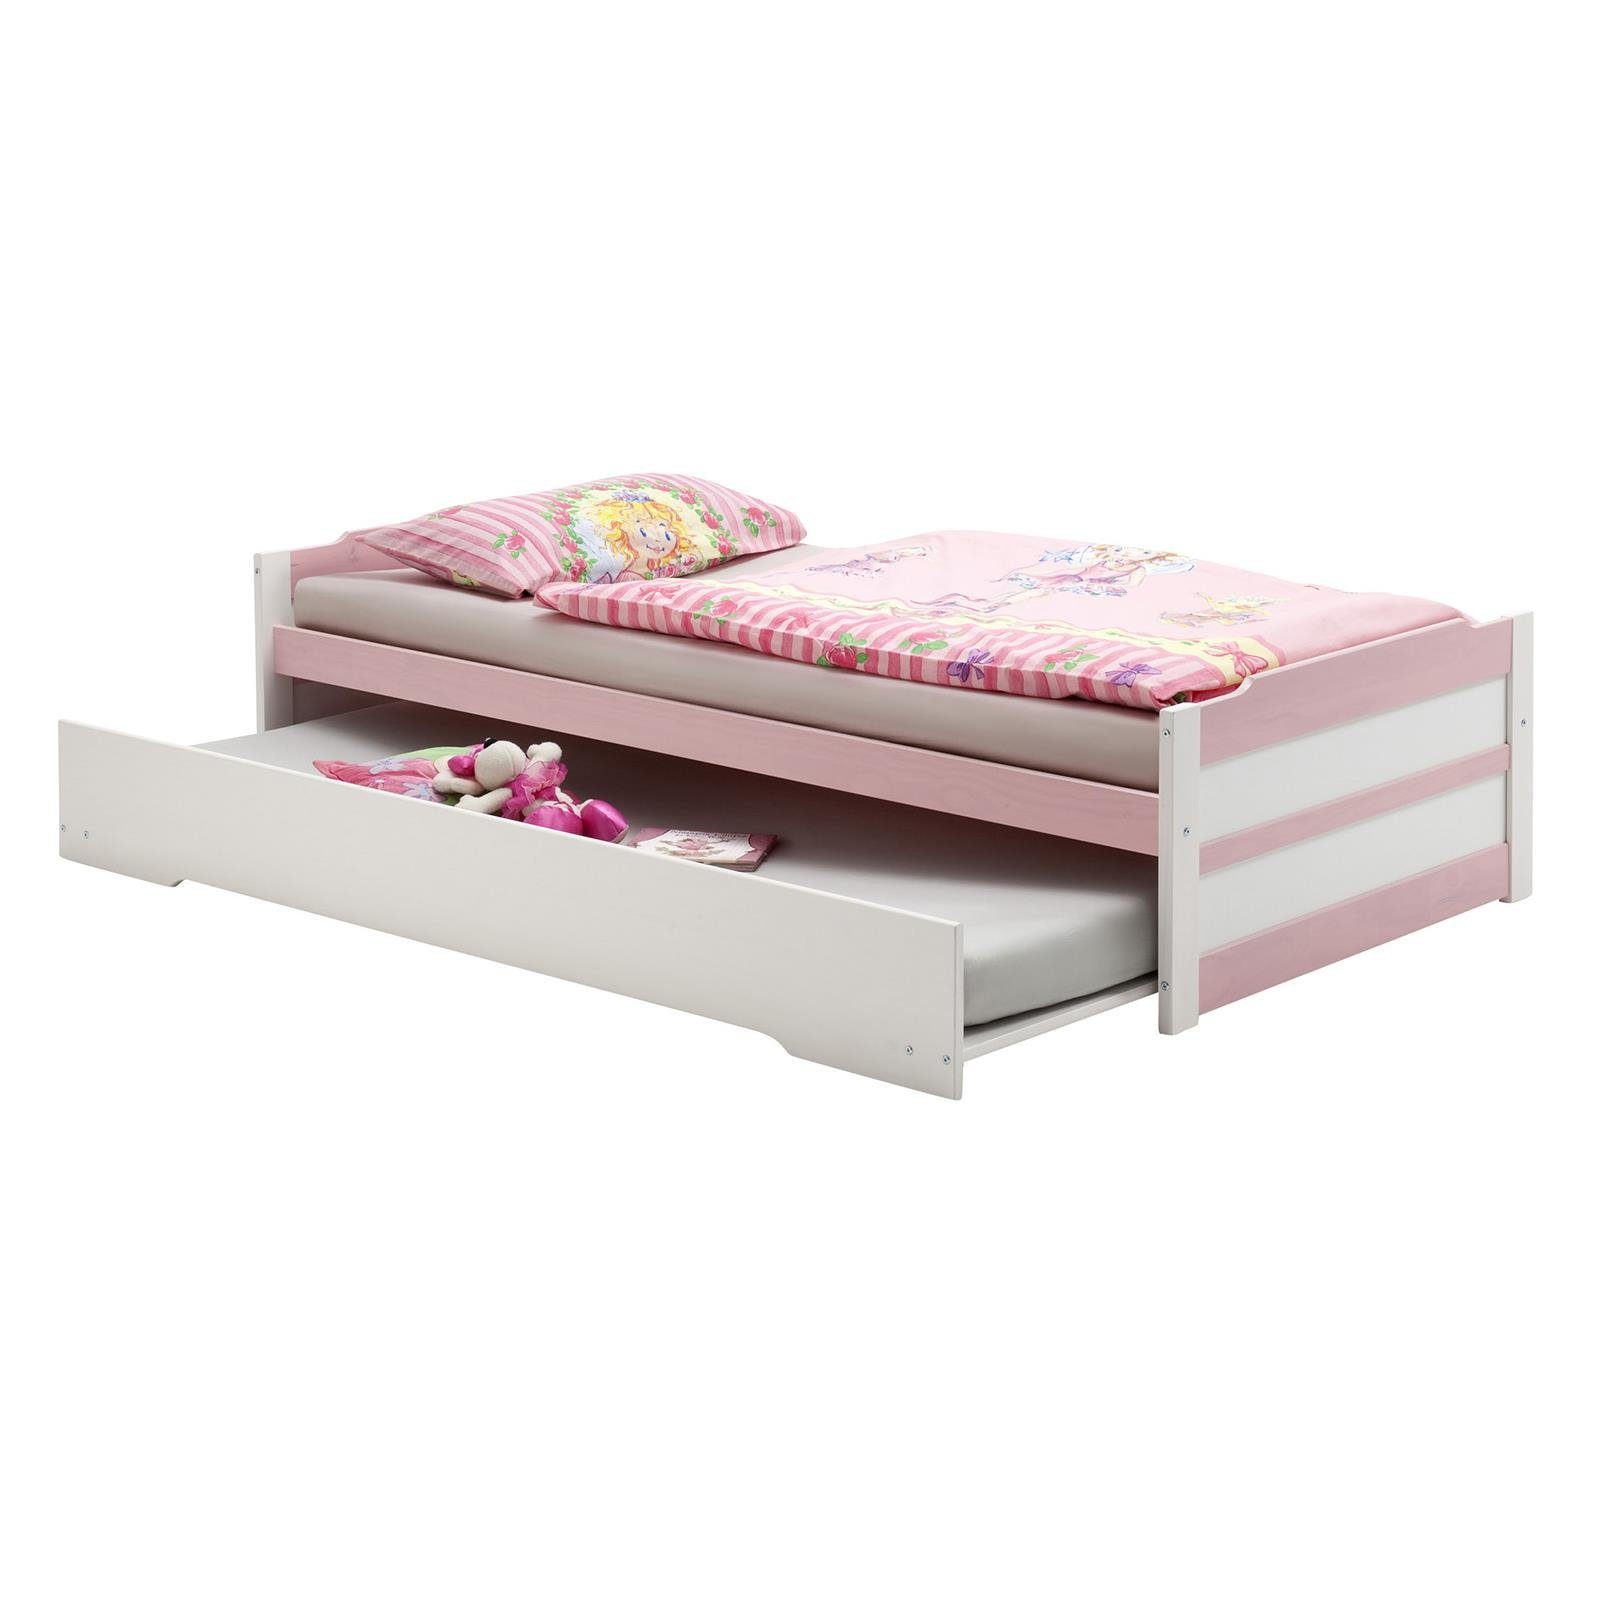 IDIMEX Funktionsbett LORENA, Ausziehbett Bett mit Stauraum Tagesbett Kiefer massiv weiss/rosa Bett weiß/rosa